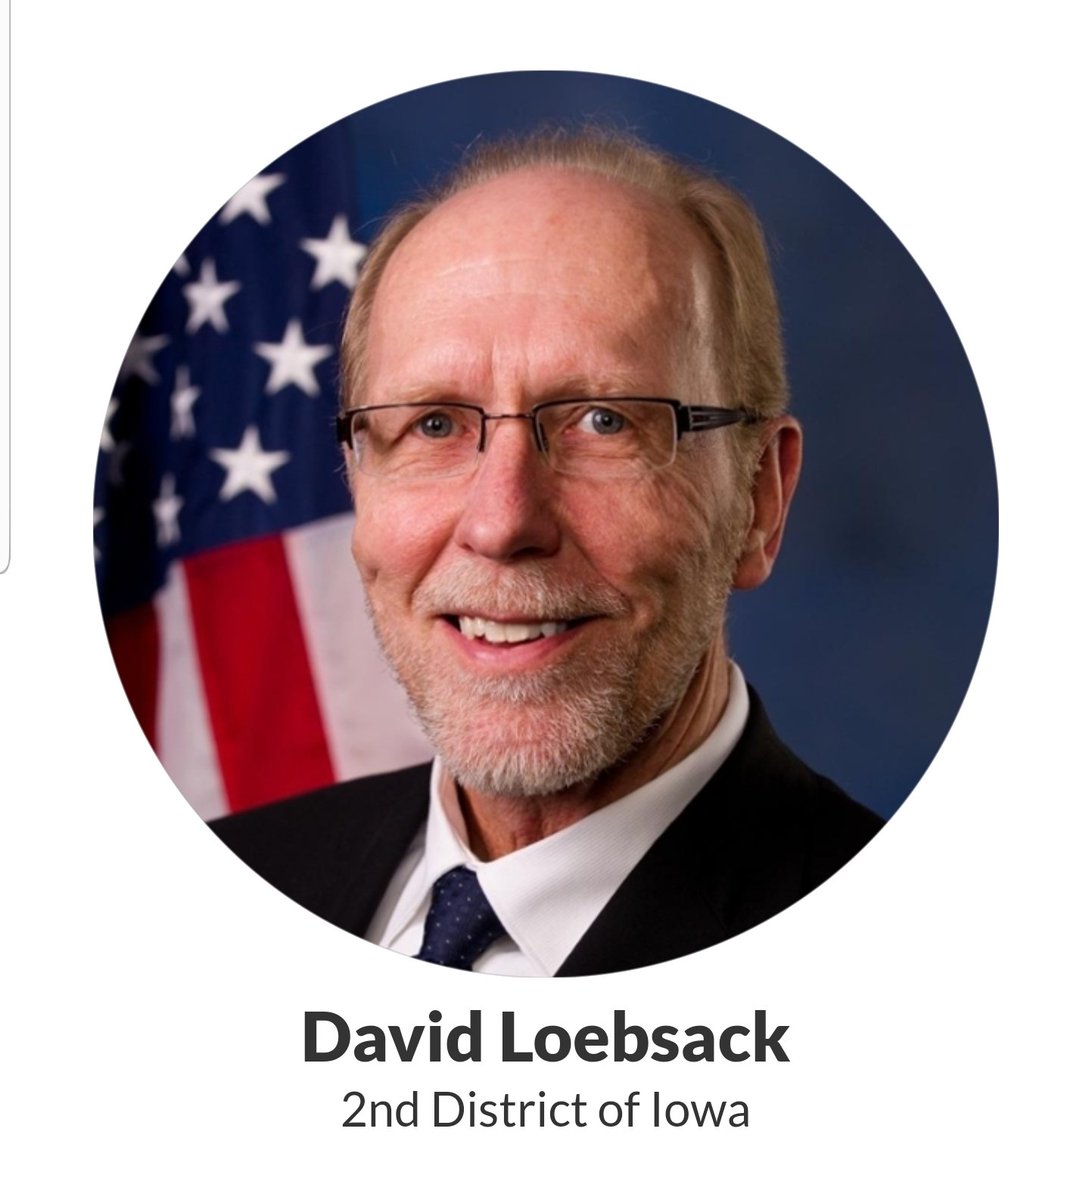 Dave Loebsack, Iowa's 2nd District https://loebsack.house.gov/ 39/98